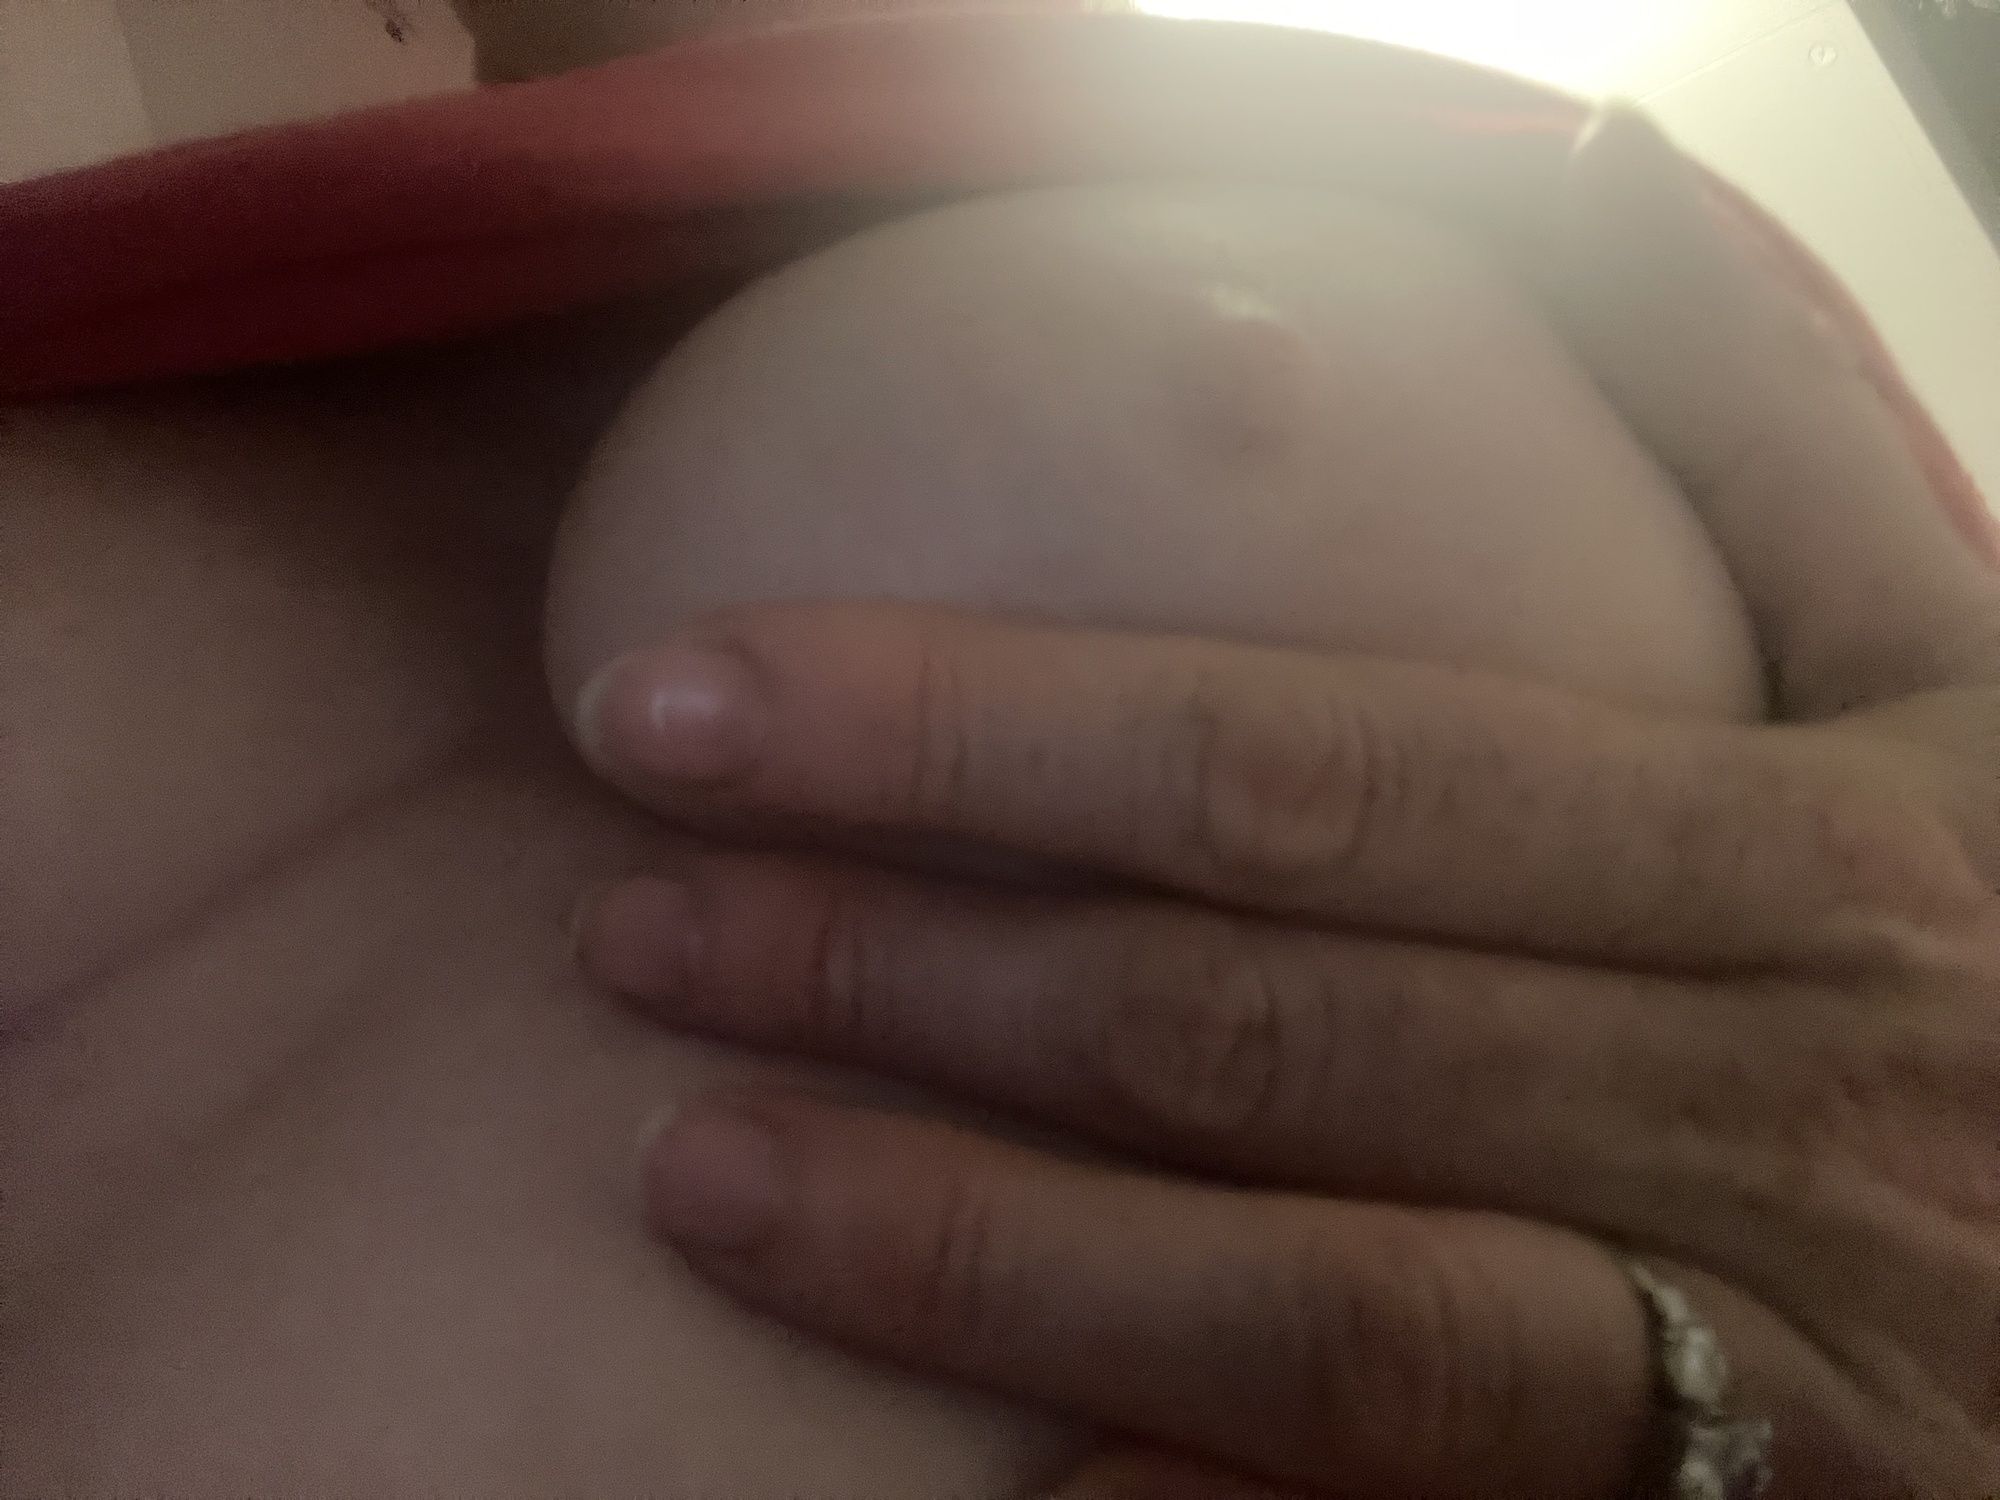 Tits #5